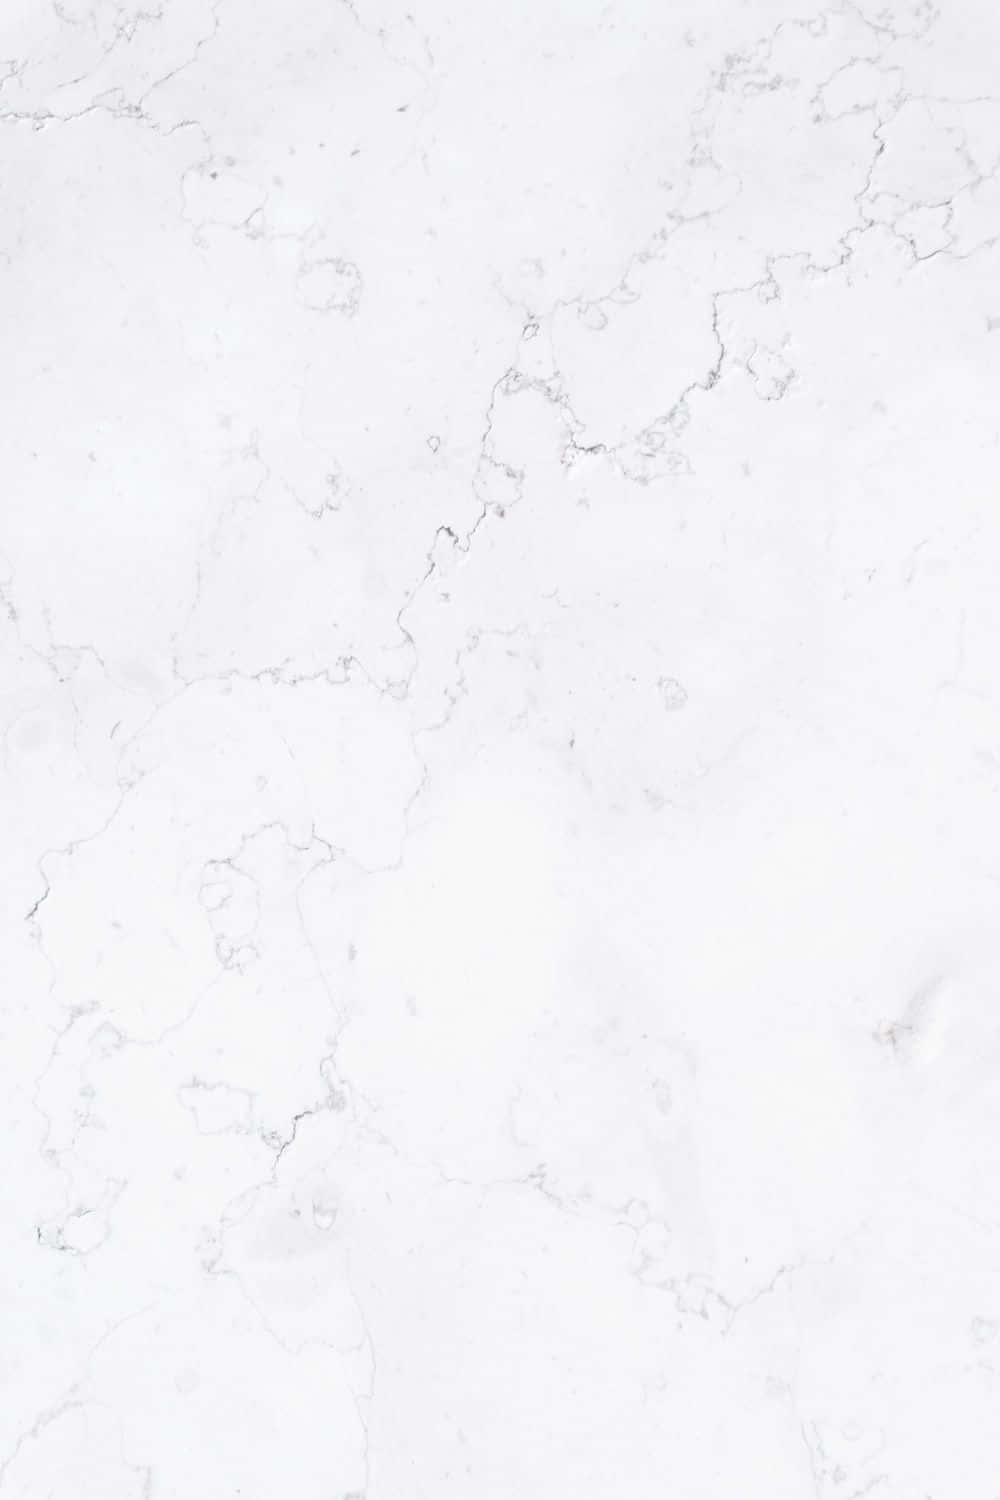 Texturedi Marmo Bianco, Design Minimalista E Decorativo, Immagine